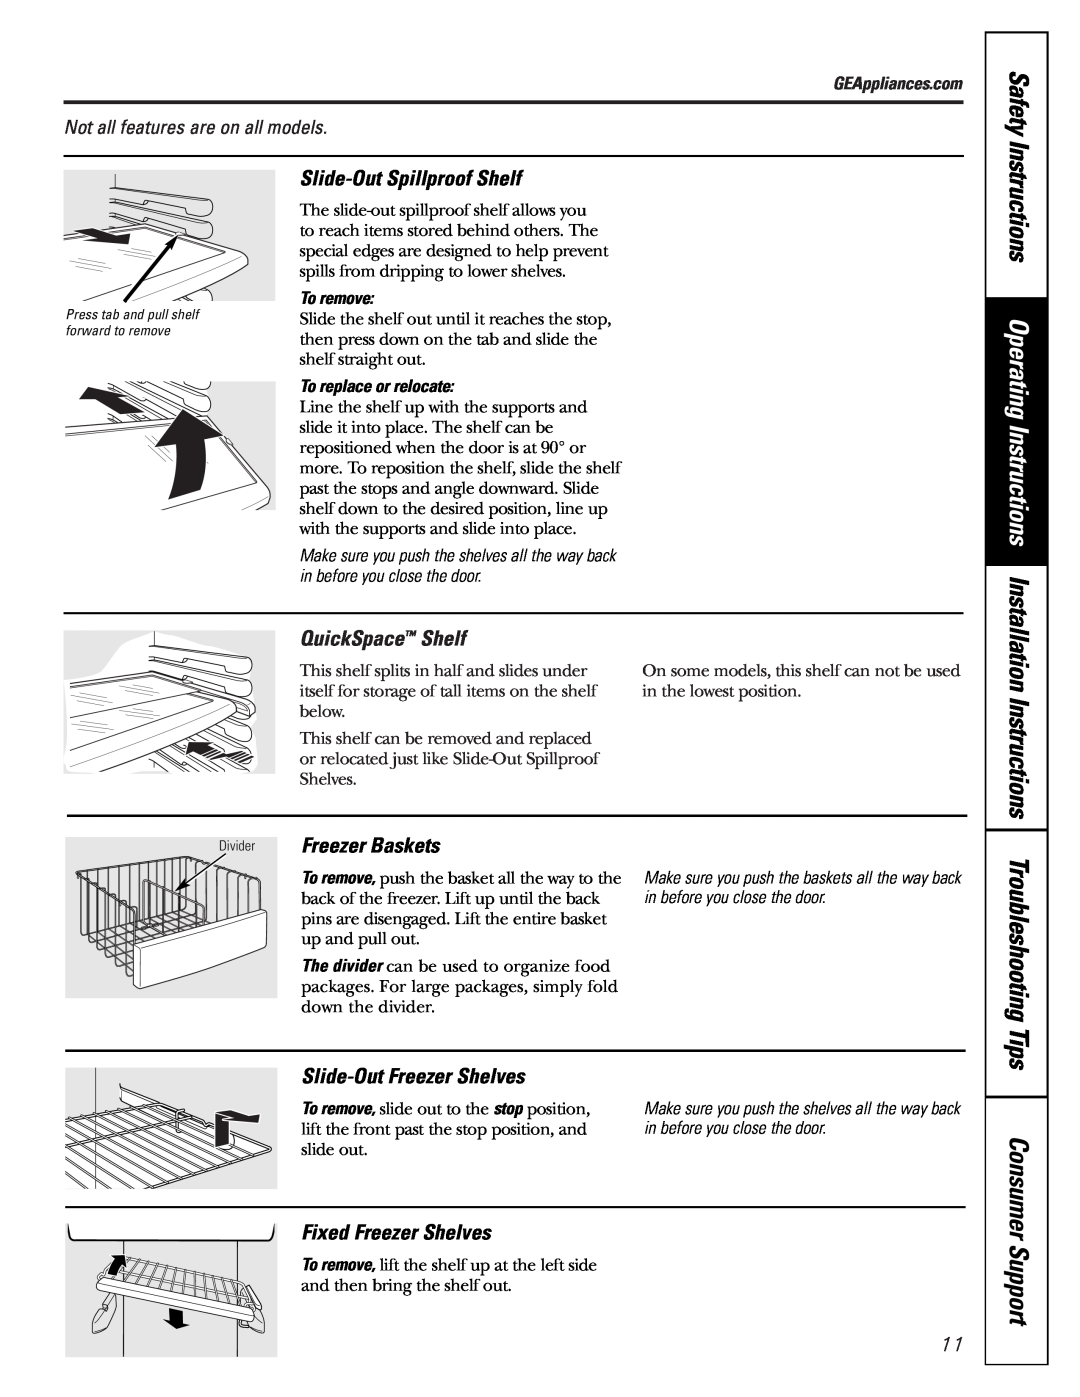 GE Safety, Instructions Operating Instructions, Slide-Out Spillproof Shelf, QuickSpace Shelf, Slide-Out Freezer Shelves 